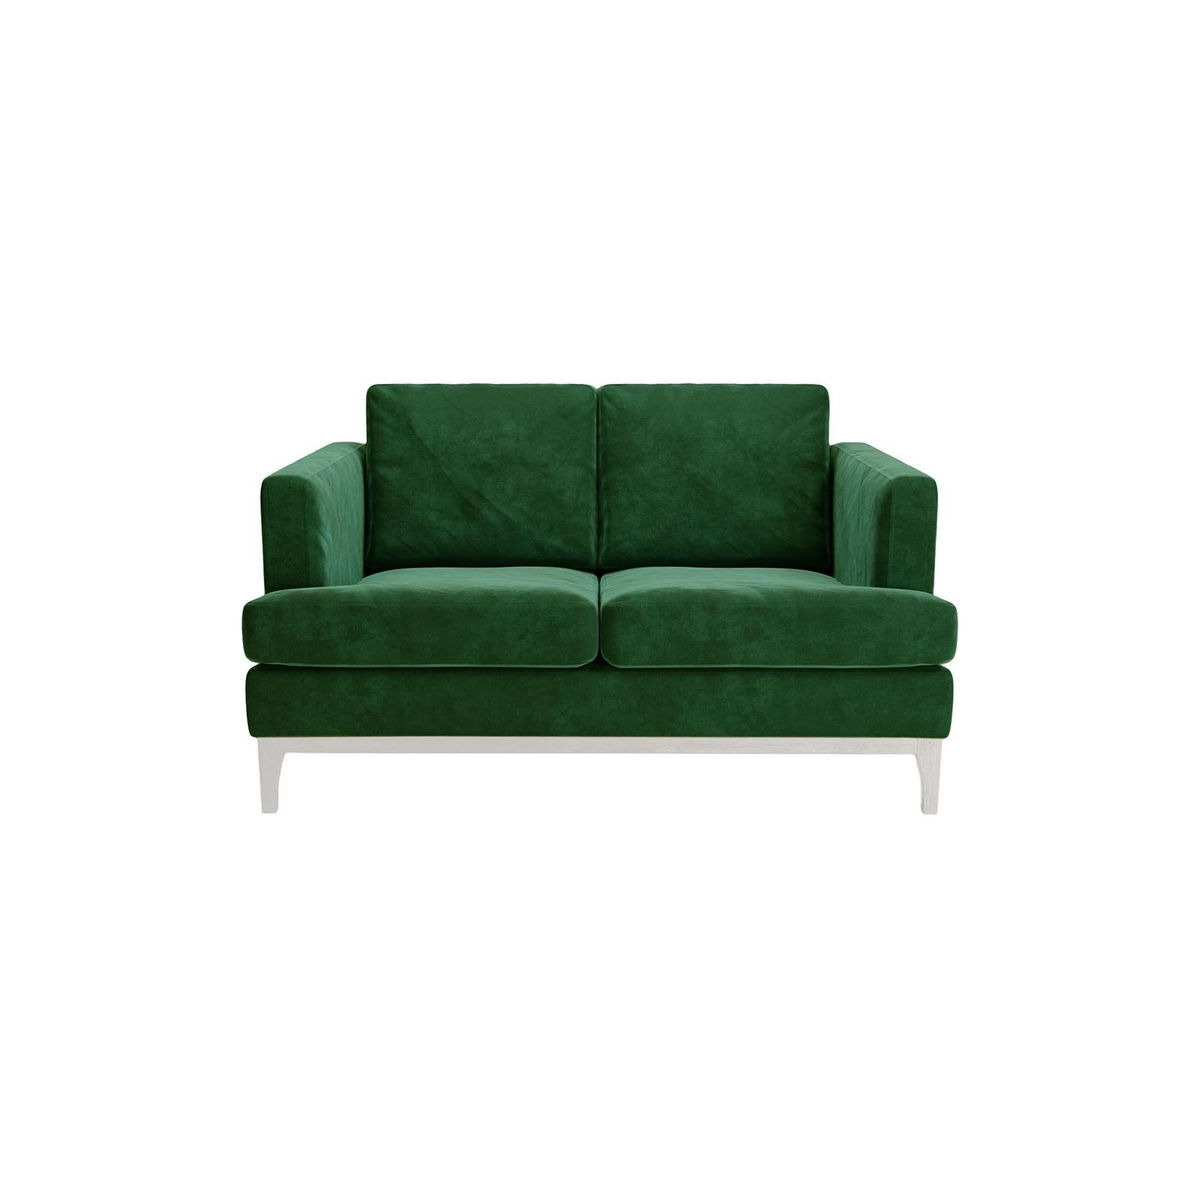 Scarlett Eco 2 Seater Sofa, green, Leg colour: white - image 1